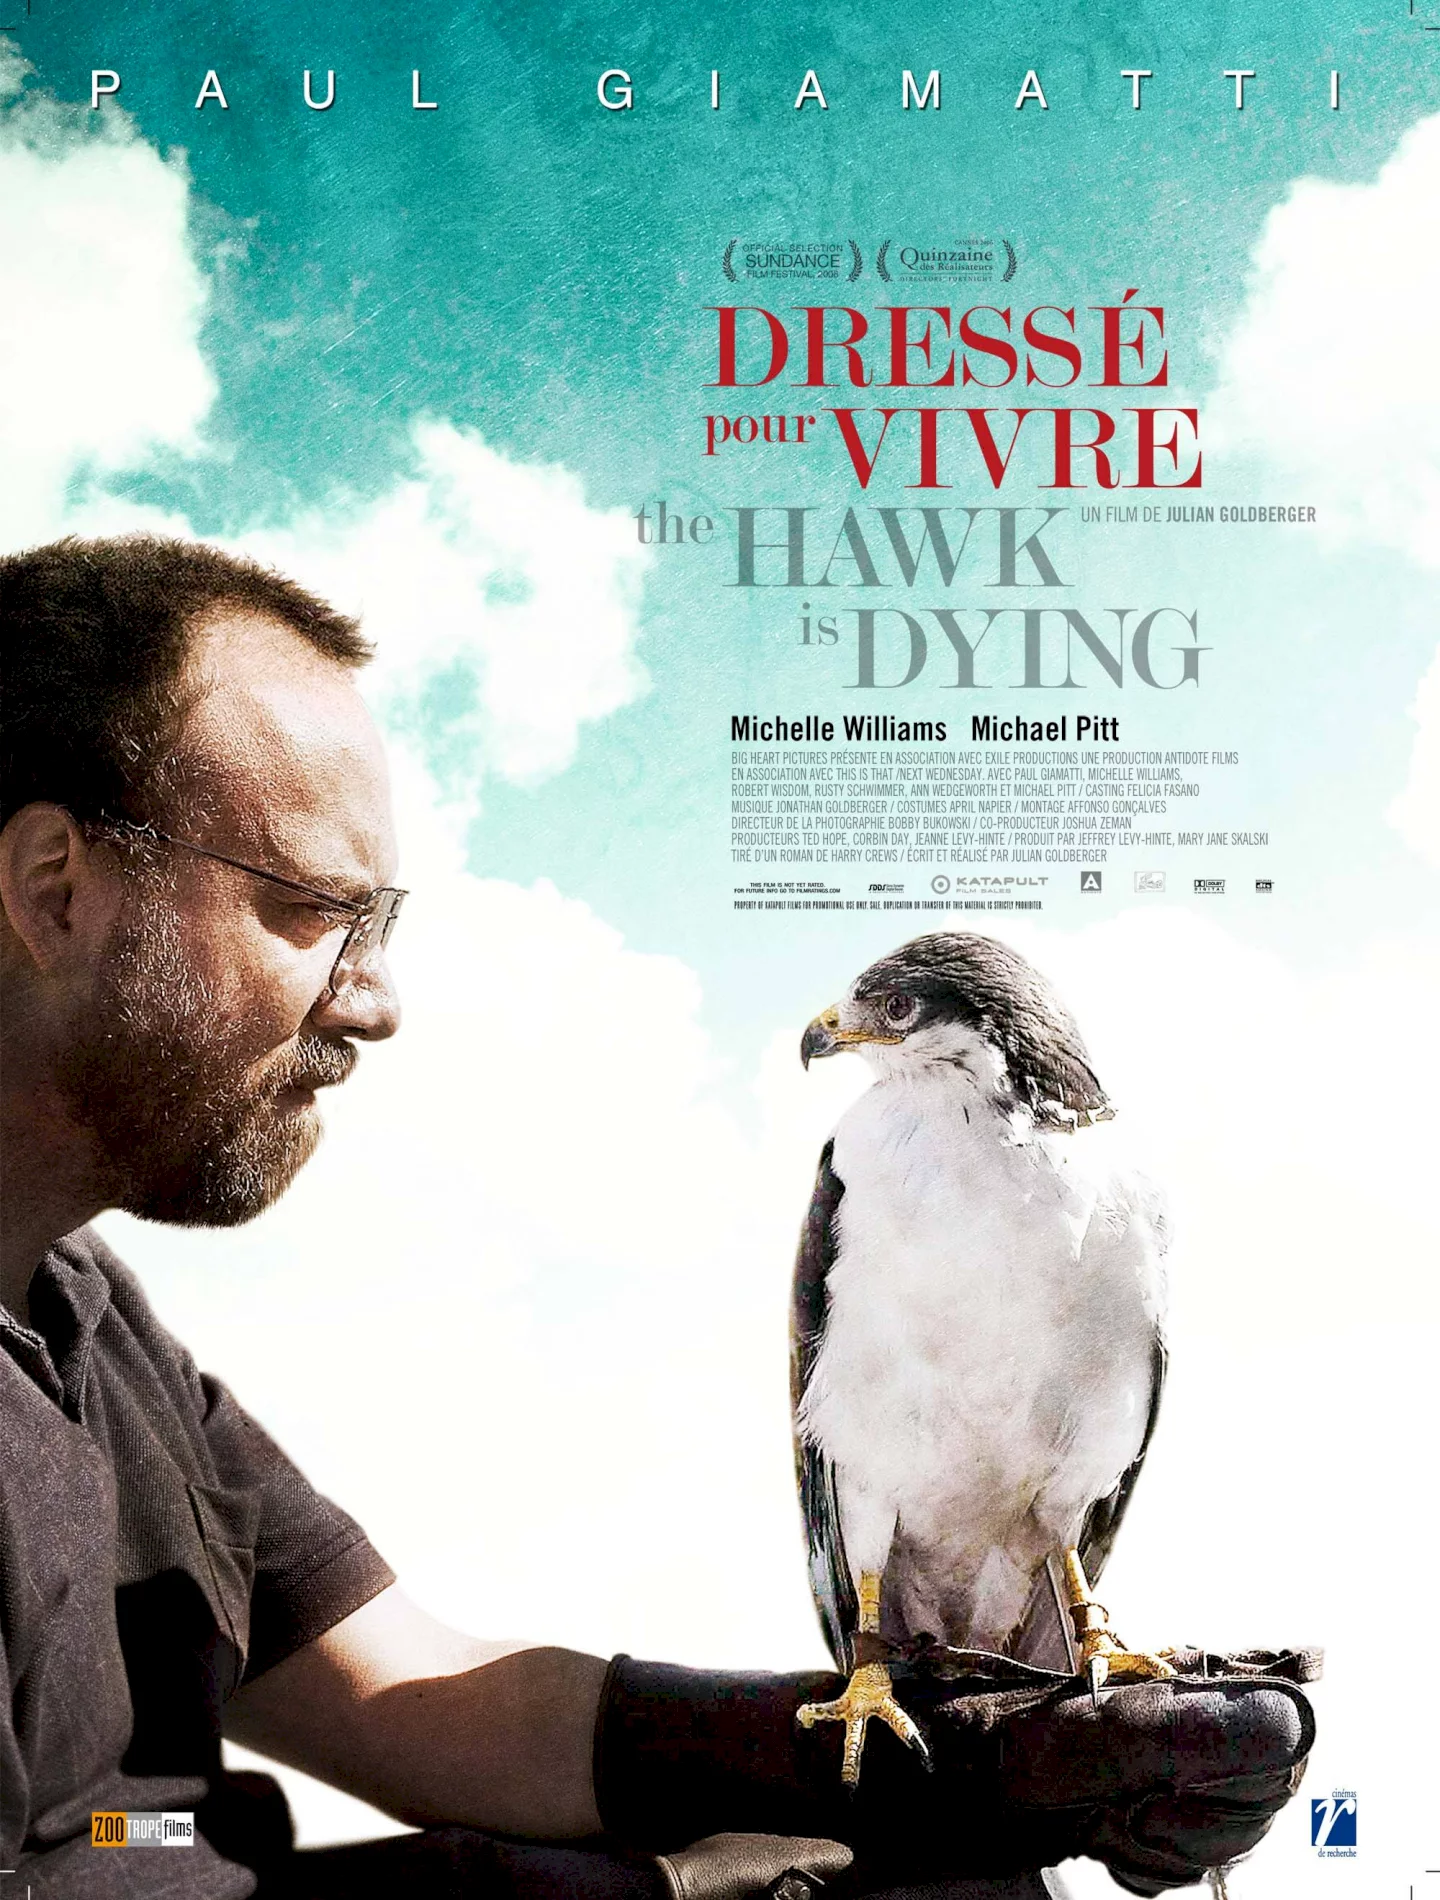 Photo 1 du film : The hawk is dying, dressé pour vivre